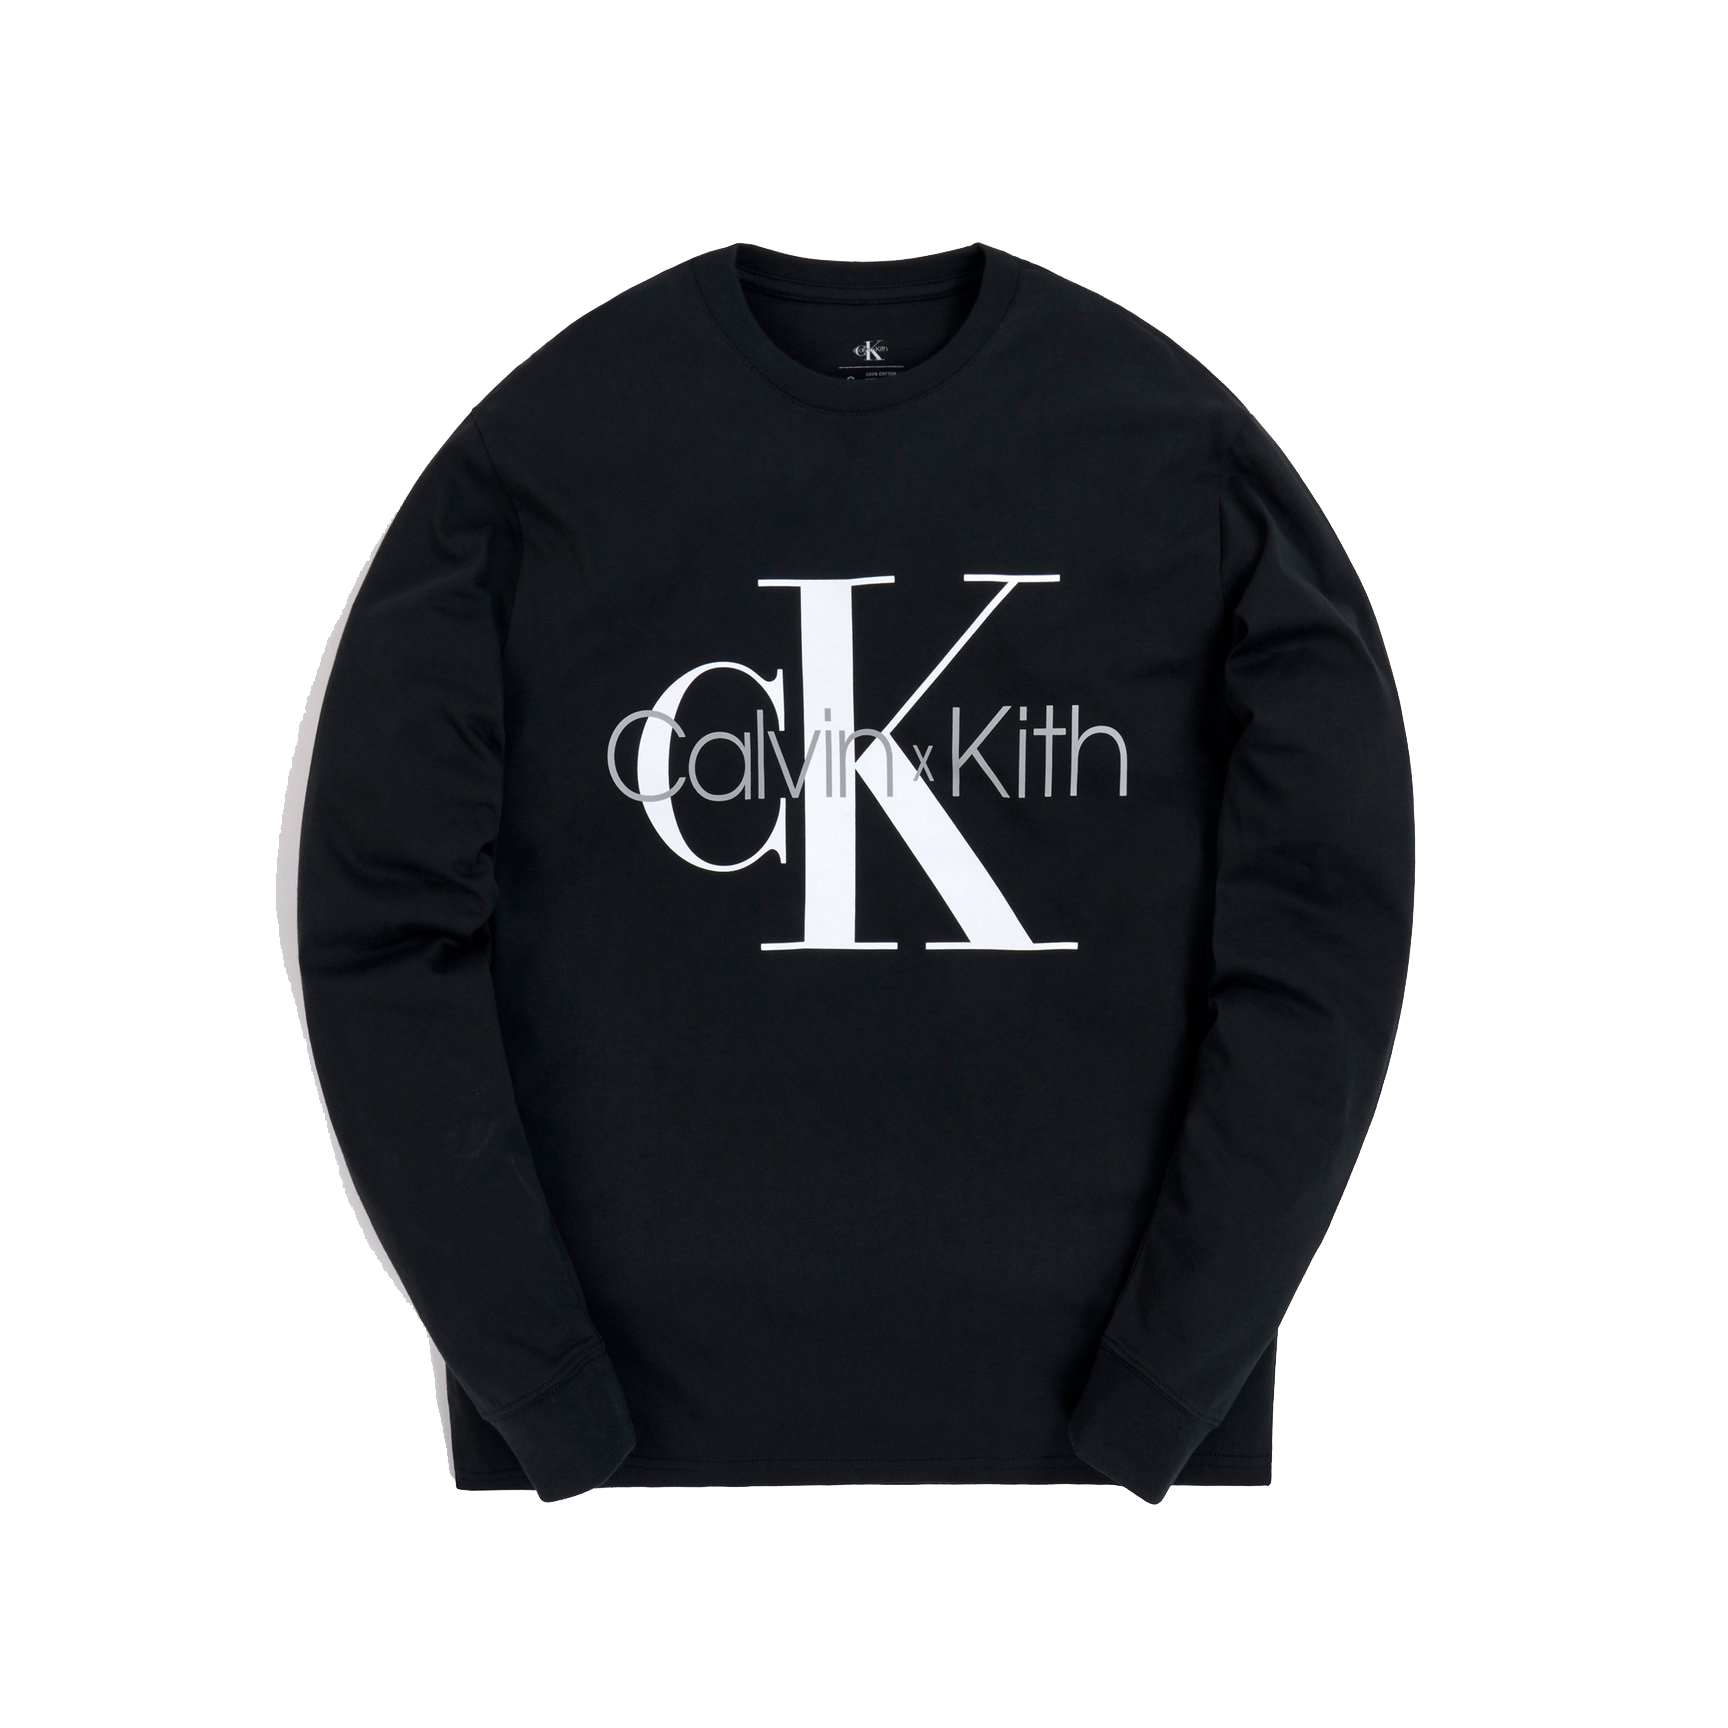 Kith for Calvin Klein L/S Tee Black Men's - FW20 - US